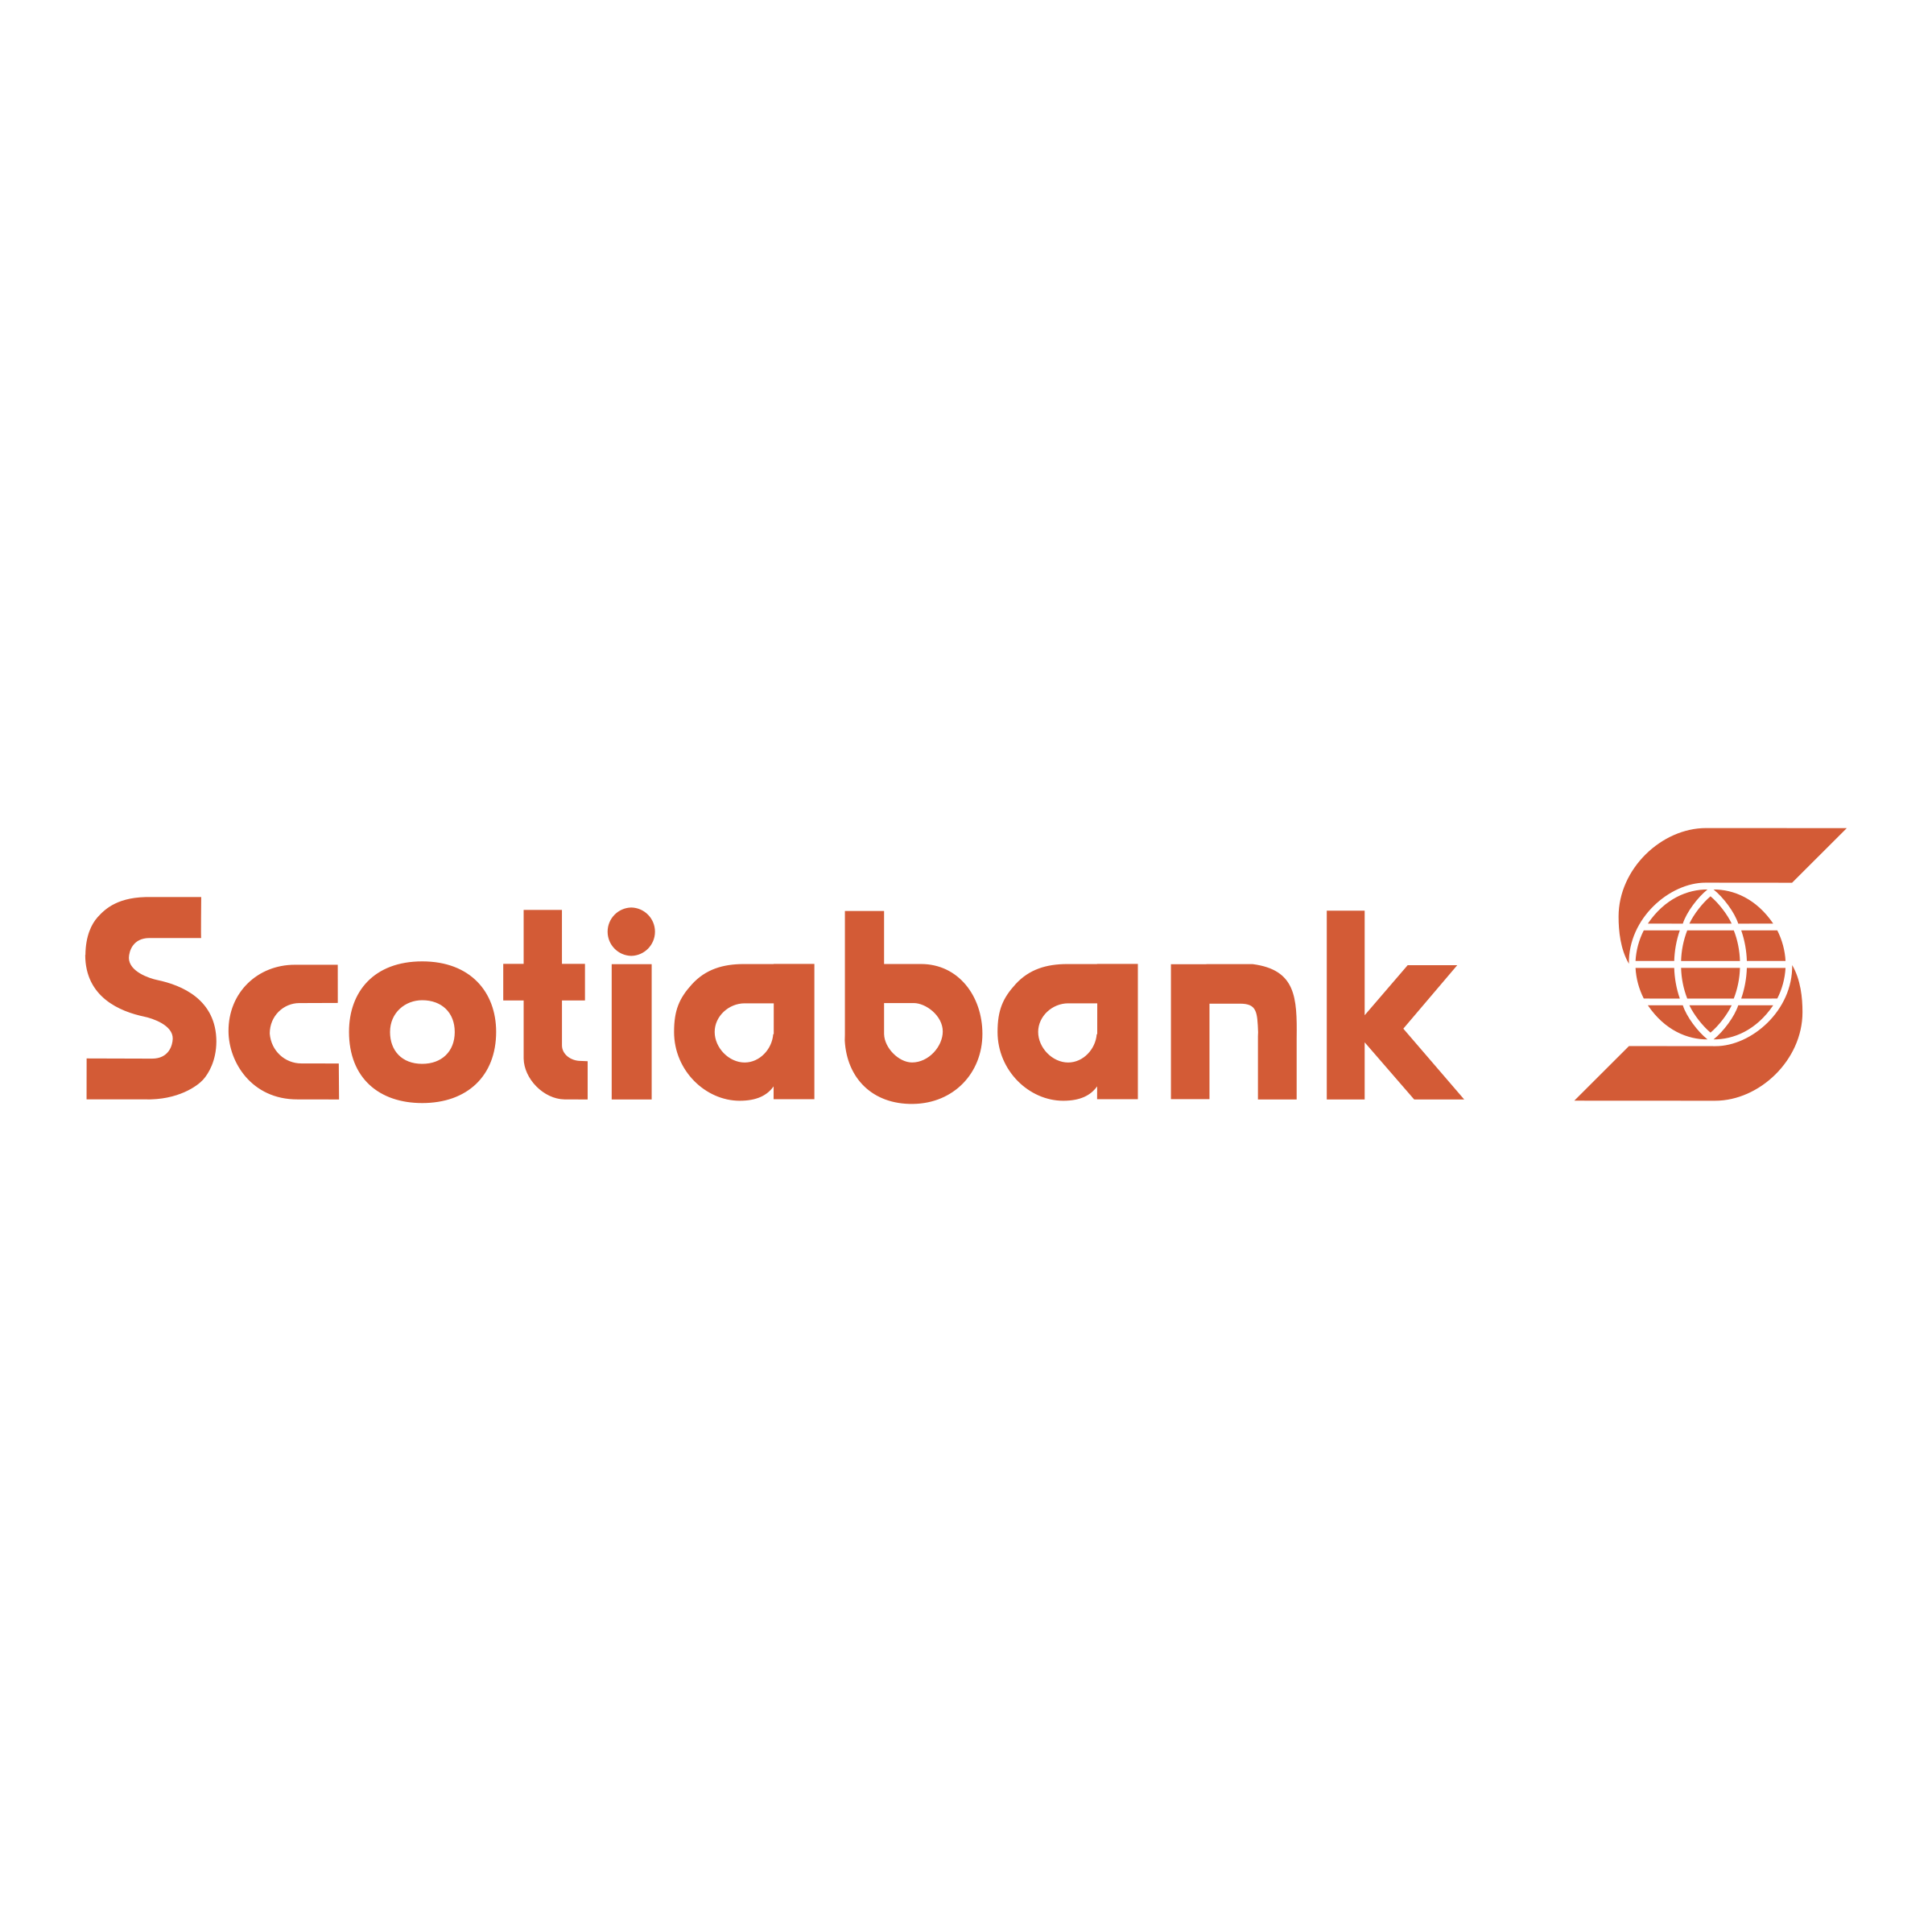 Scotiabank Logo - Scotiabank Logo PNG Transparent & SVG Vector